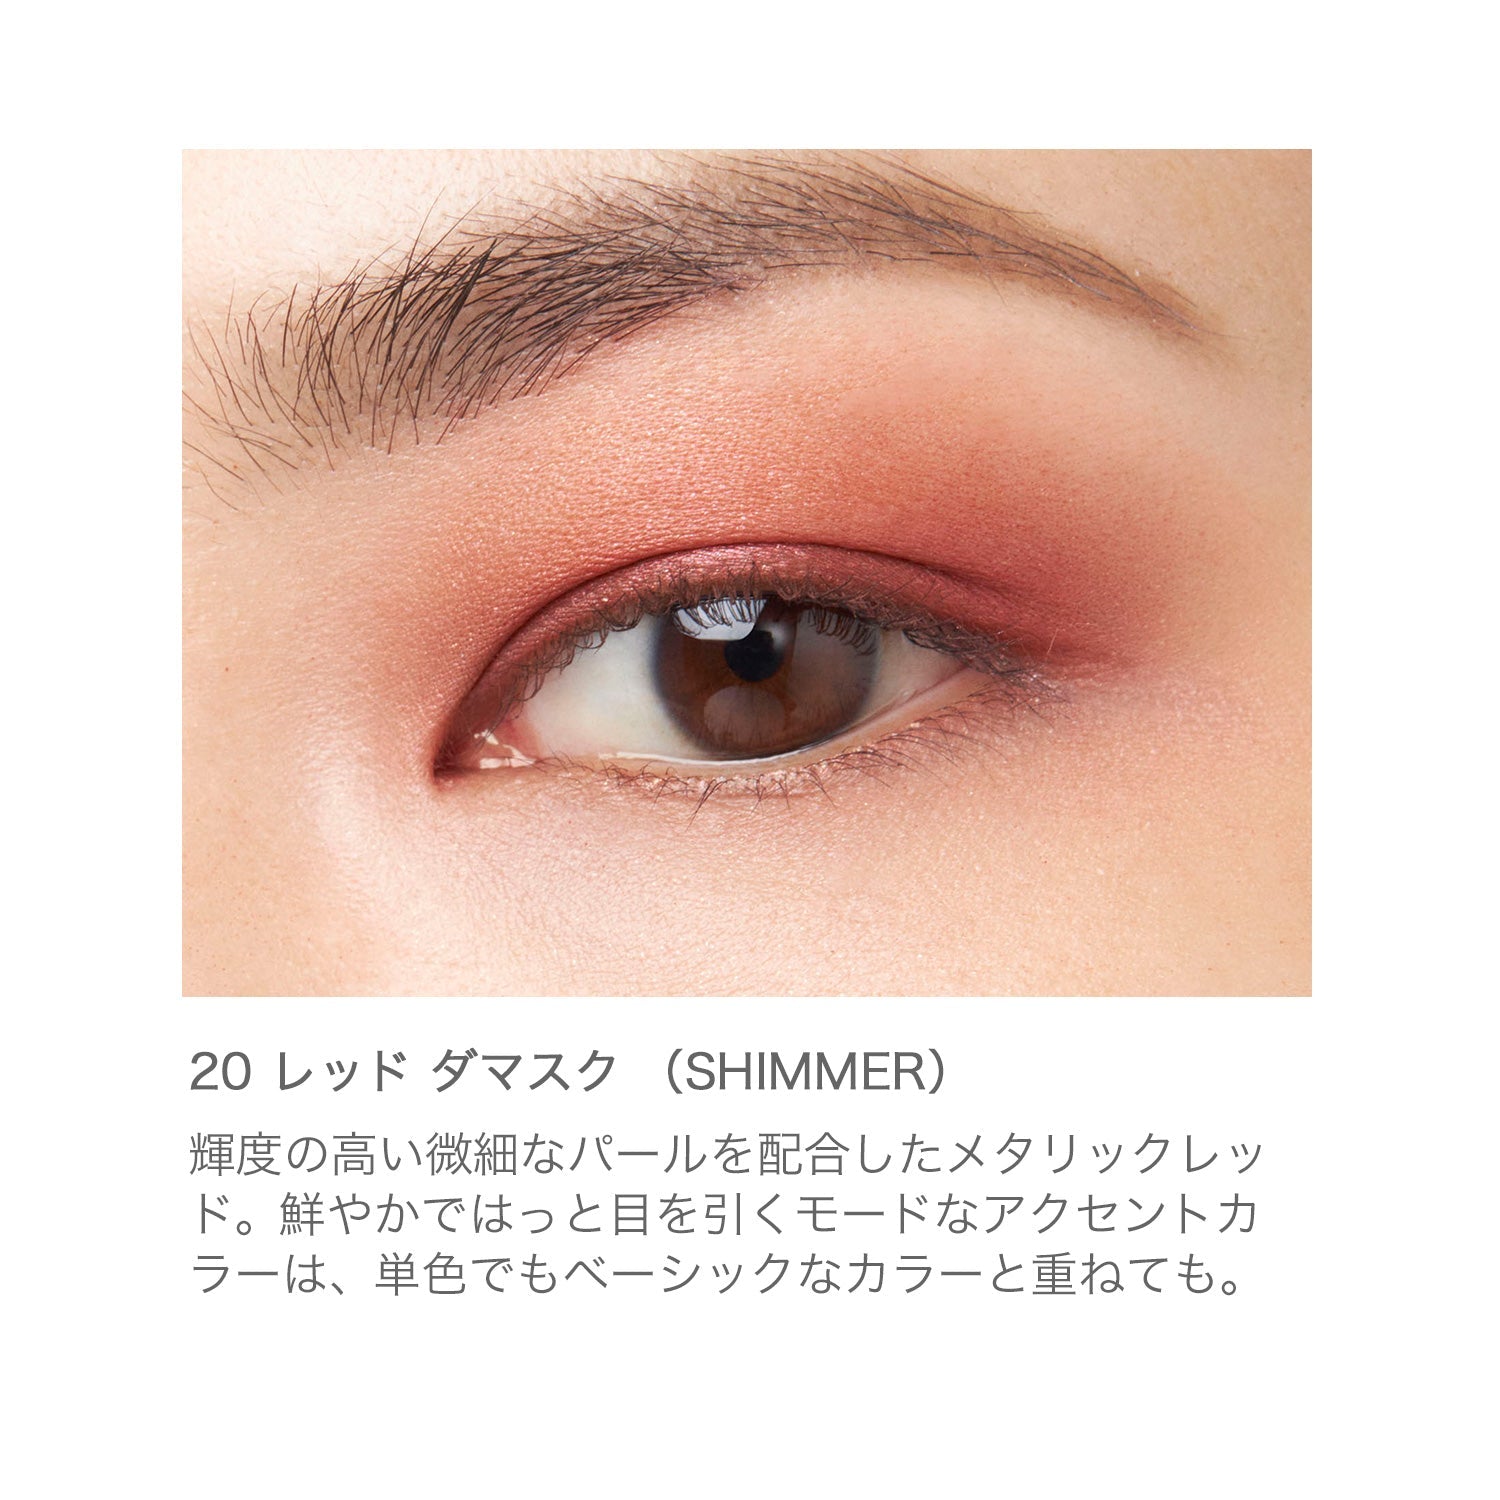 RMK Infinite Single Eyes - Ichiban Mart